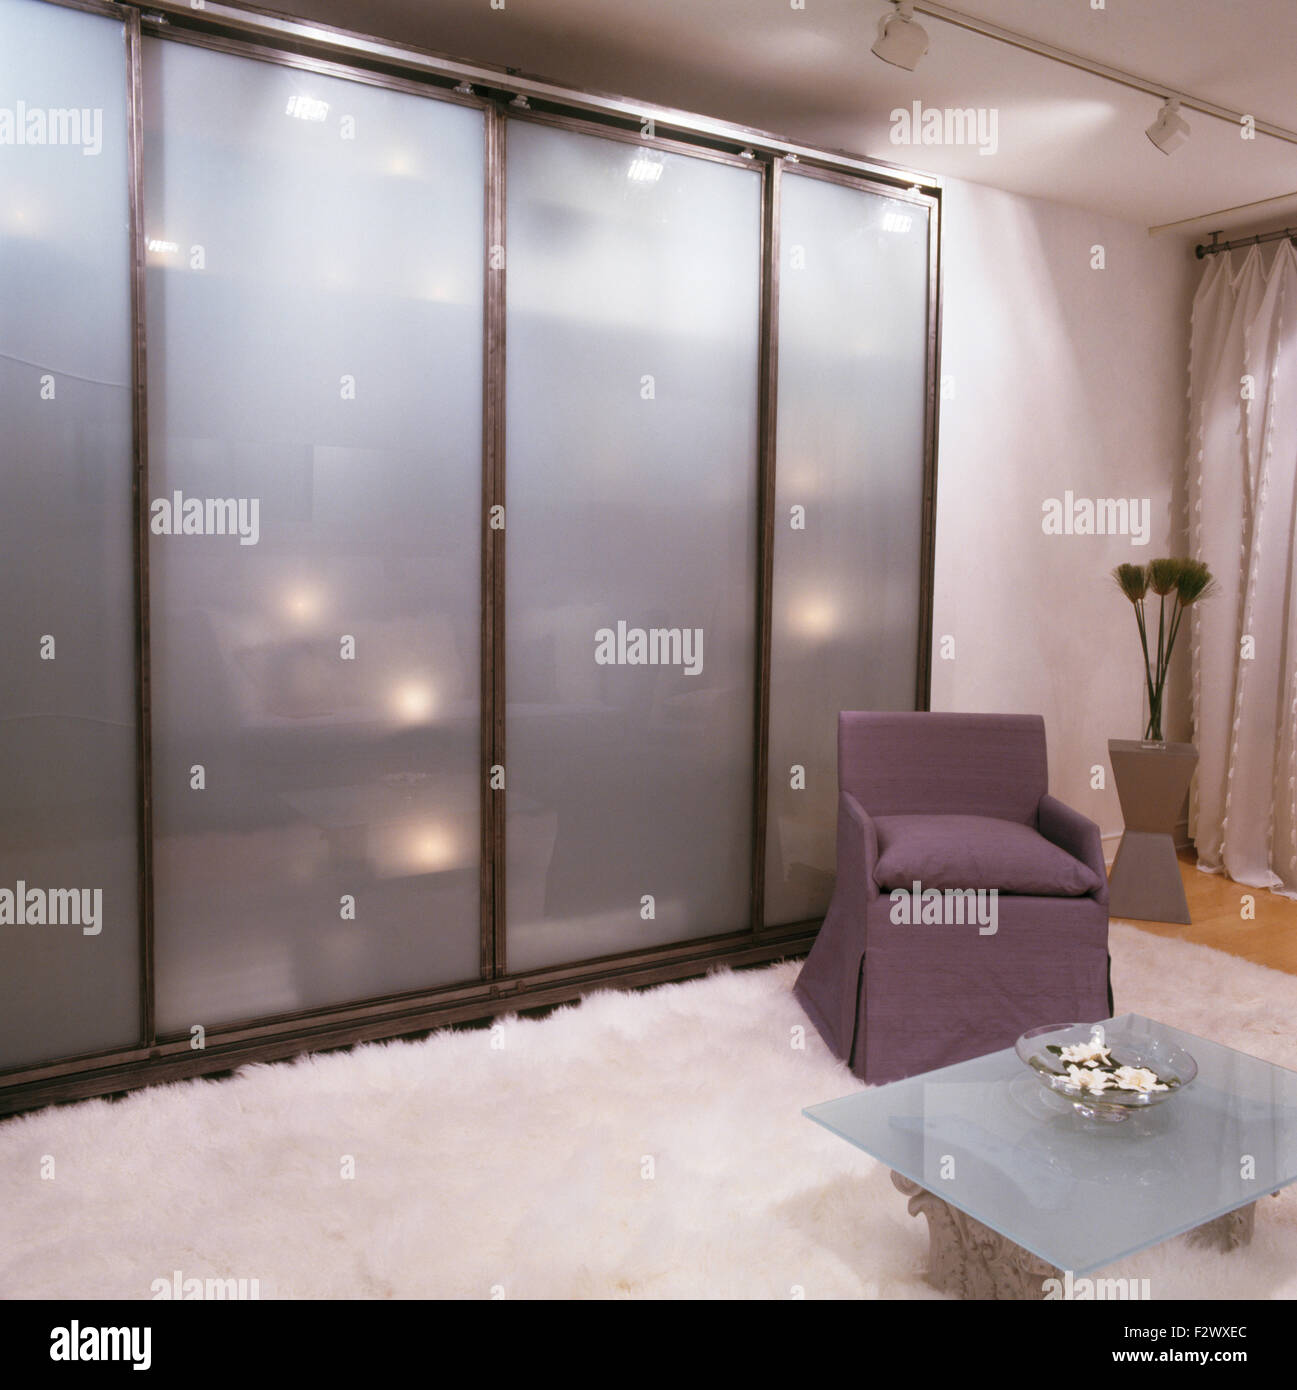 Portes coulissantes en verre opaque sur armoire dans chambre avec tapis de fourrure blanche sur le sol Banque D'Images